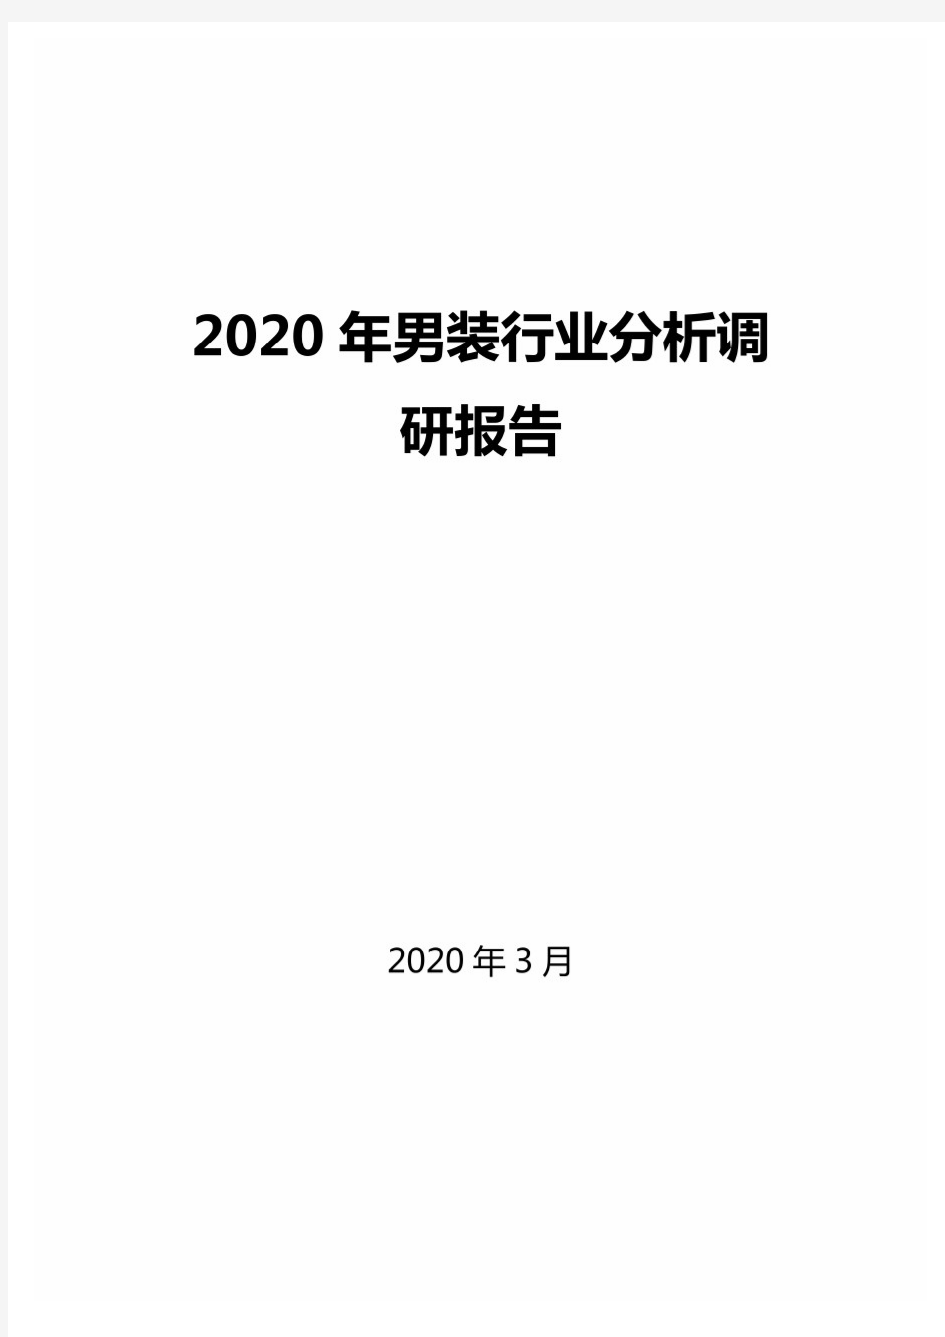 2020年男装行业分析调研报告